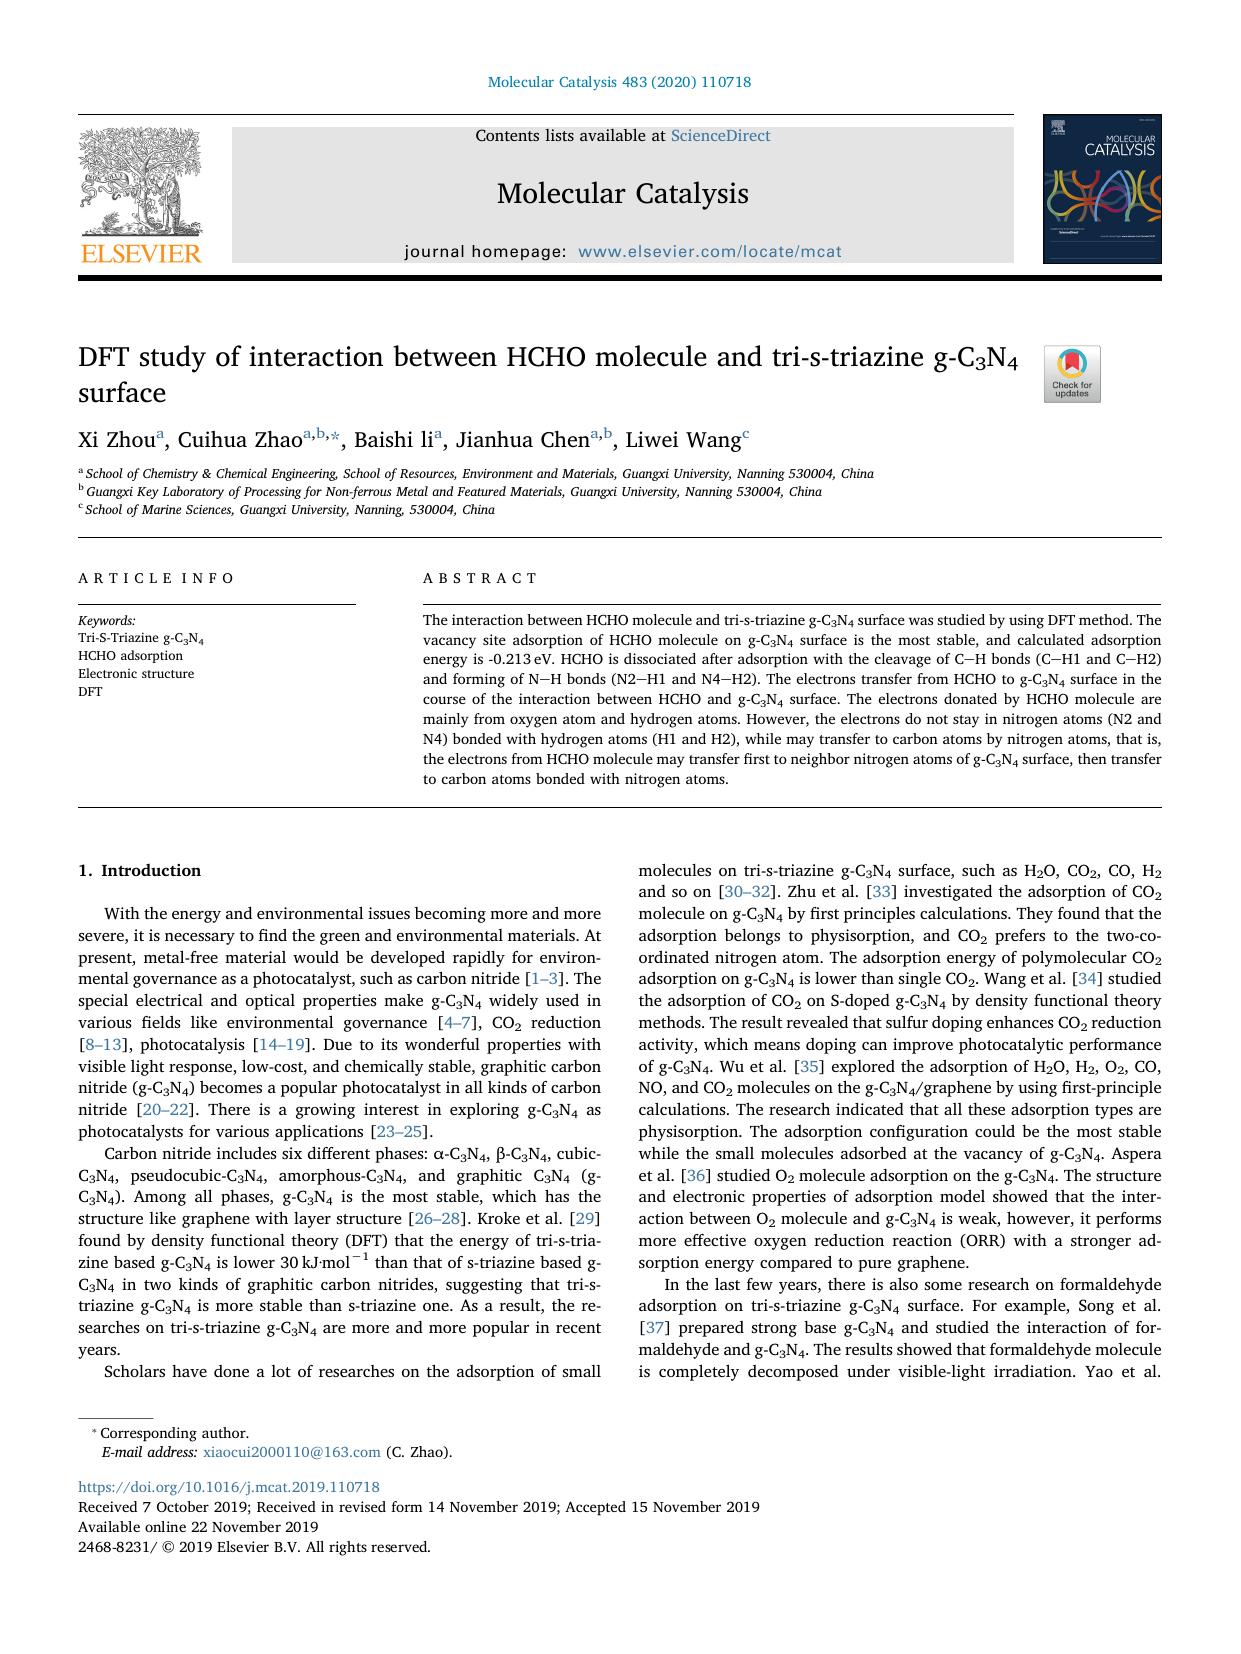 DFT study of interaction between HCHO molecule and tri-s-triazine g-C3N4 surface by Xi Zhou & Cuihua Zhao & Baishi li & Jianhua Chen & Liwei Wang